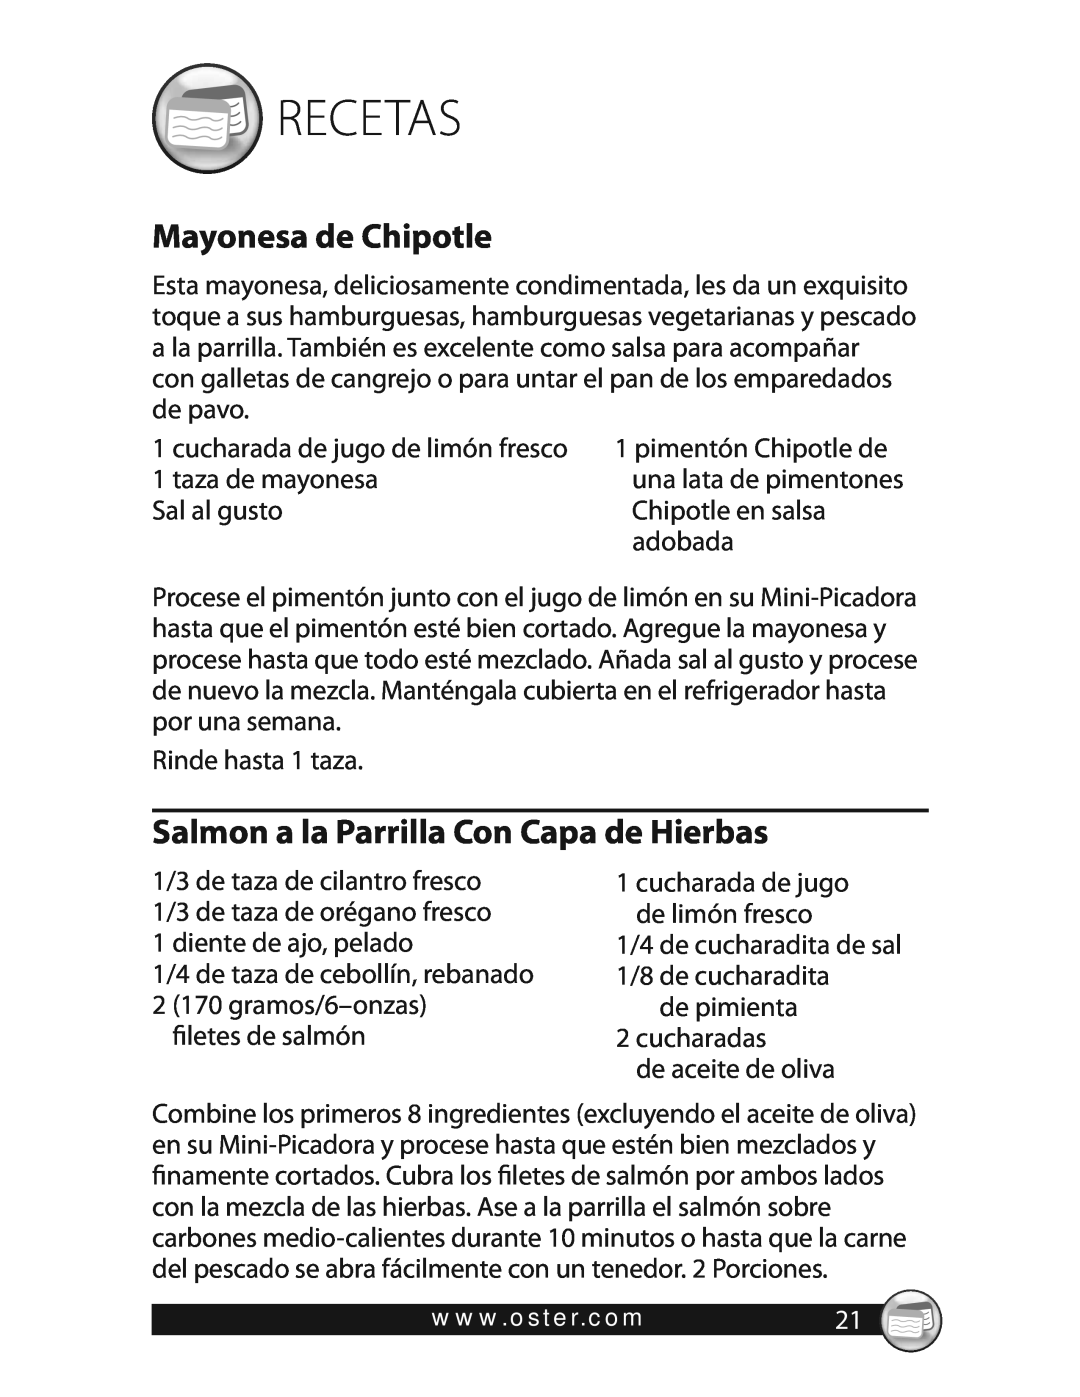 Oster 3320 warranty Recetas, Mayonesa de Chipotle, Salmon a la Parrilla Con Capa de Hierbas 